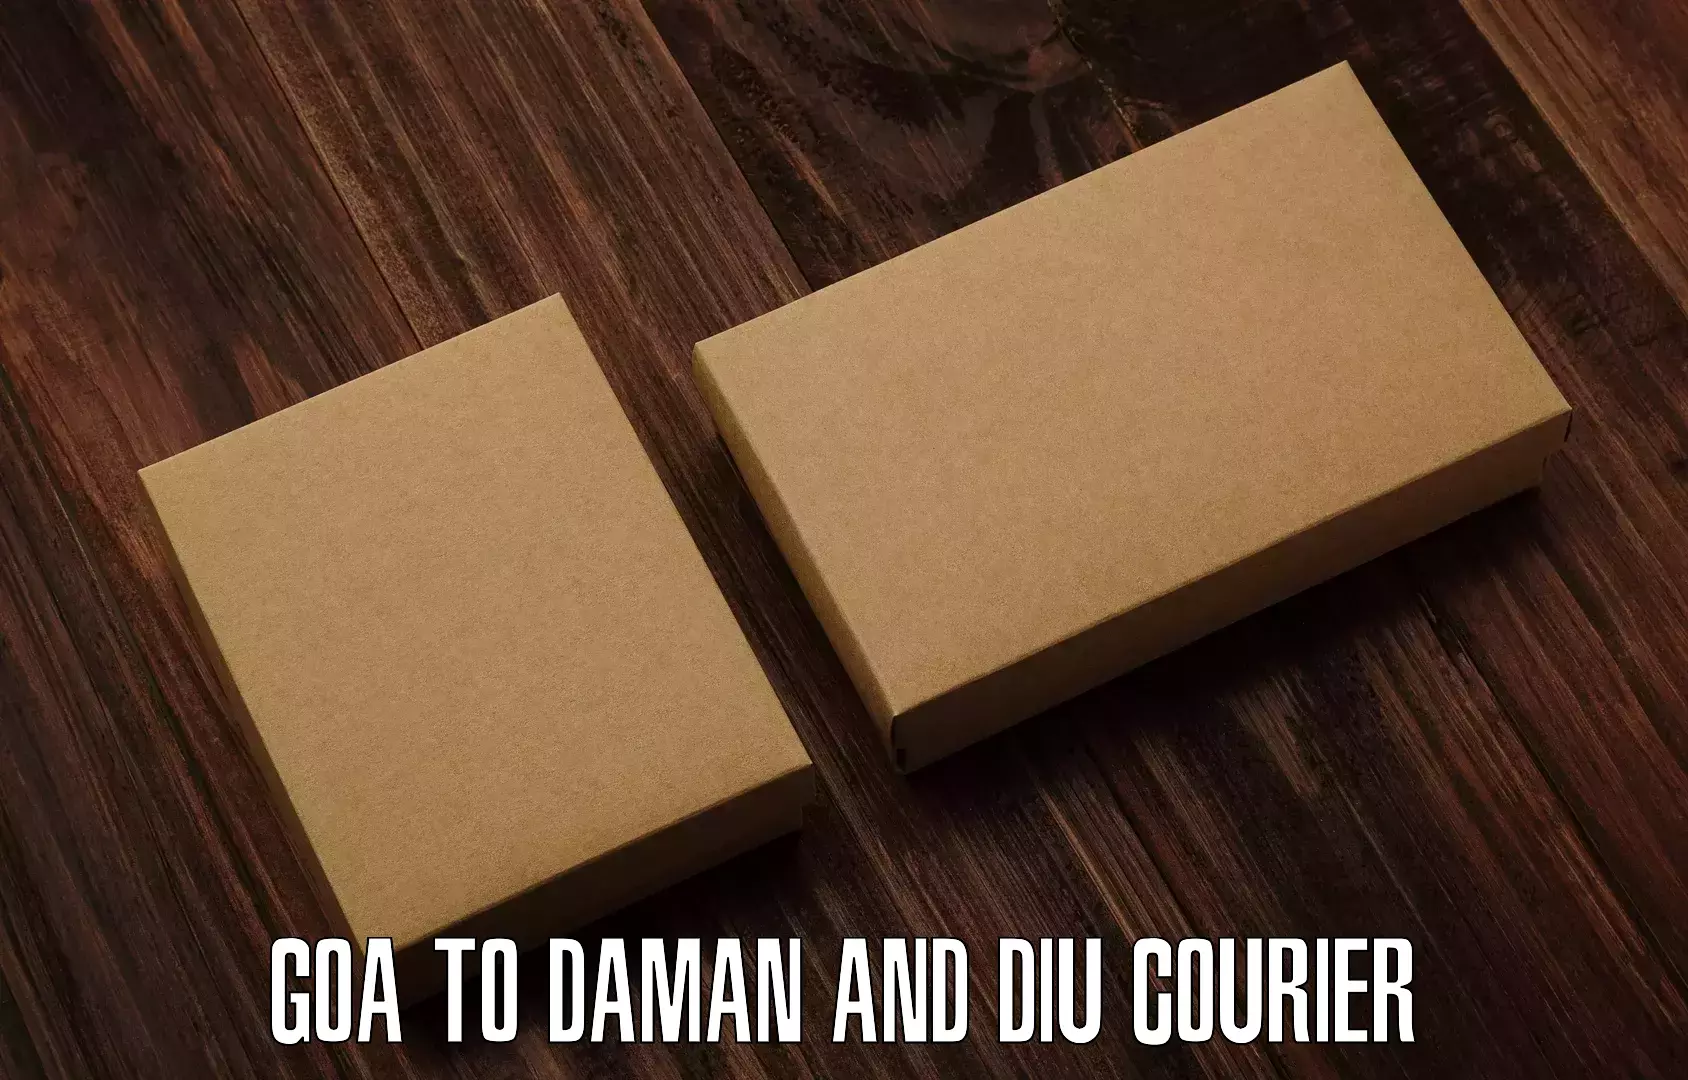 Express logistics service Goa to Daman